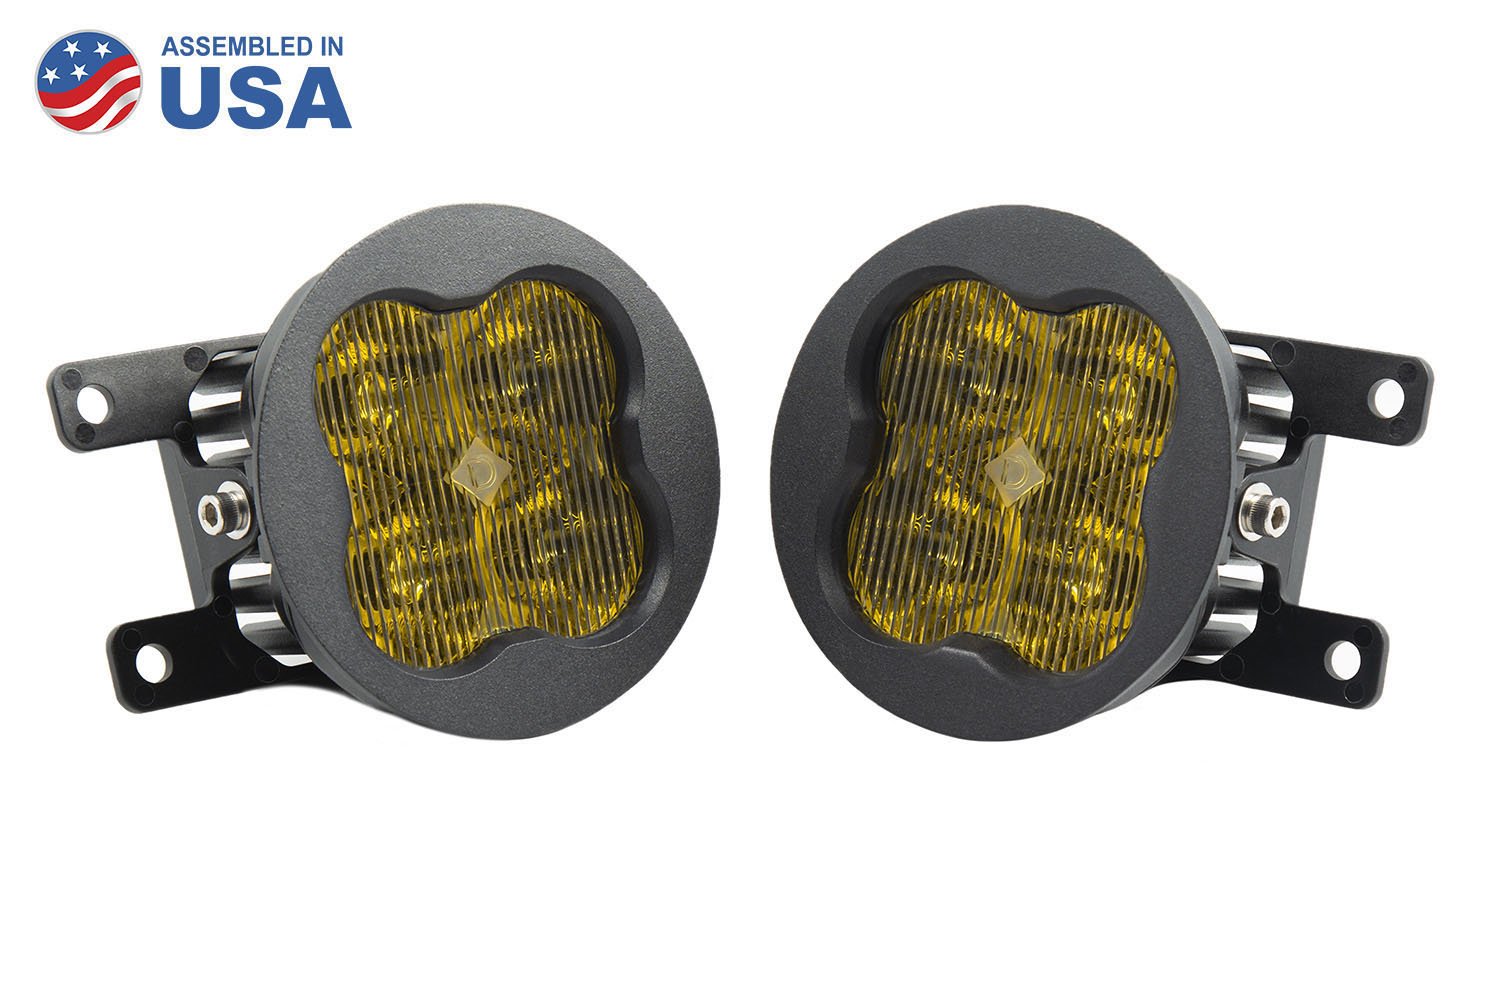 SS3 LED Fog Light Kit for 2012-2014 Honda CR-V Diode Dynamics-